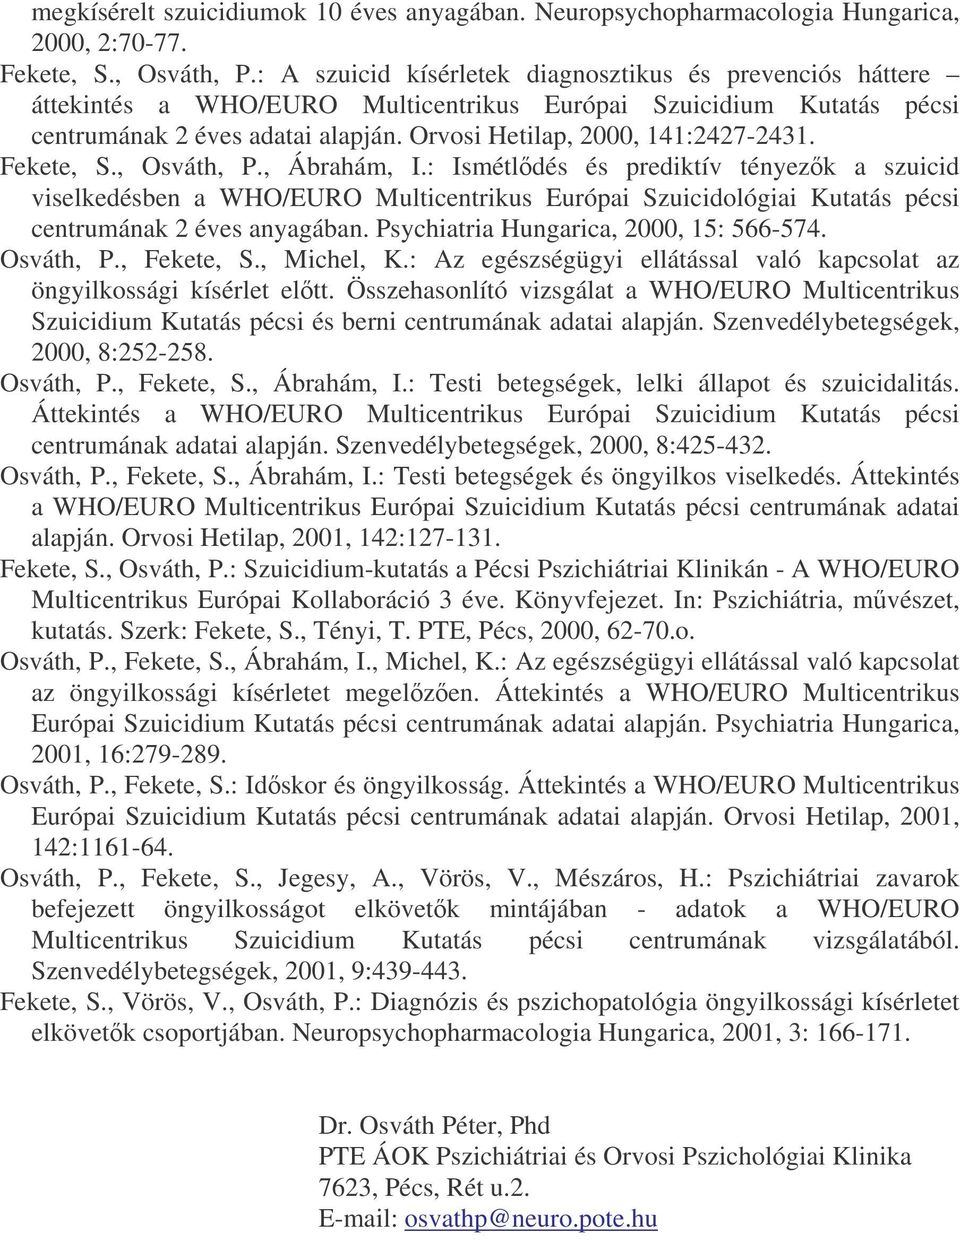 Fekete, S., Osváth, P., Ábrahám, I.: Ismétldés és prediktív tényezk a szuicid viselkedésben a WHO/EURO Multicentrikus Európai Szuicidológiai Kutatás pécsi centrumának 2 éves anyagában.